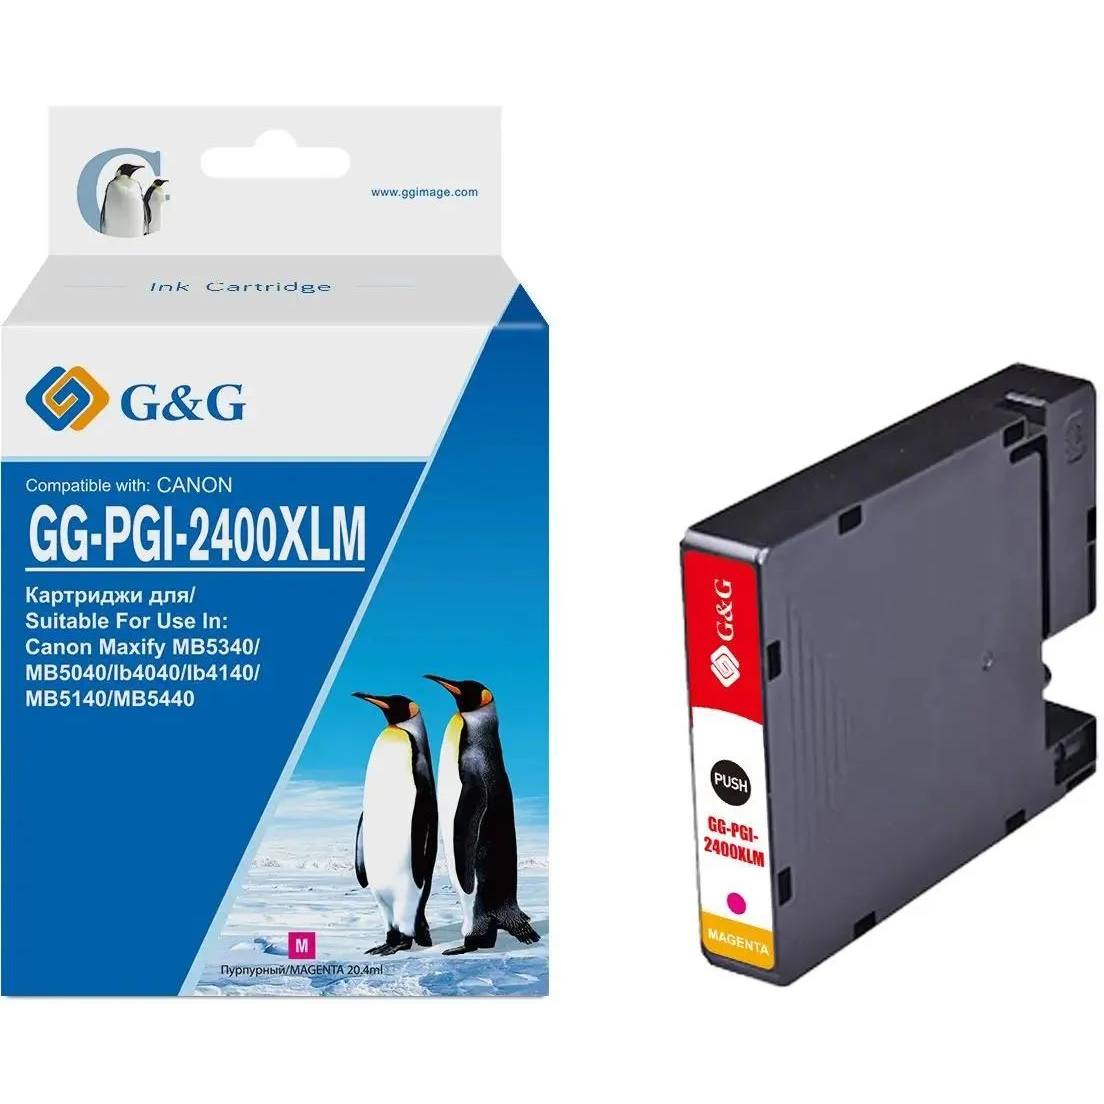 Картридж струйный G&G GG-PGI-2400XLM PGI-2400XL M пурпурный (20.4мл) для Canon Maxify iB4040/iB4140/МВ5040/MB5140/МВ5340/MB5440 картридж canon pgi 455xxl черный